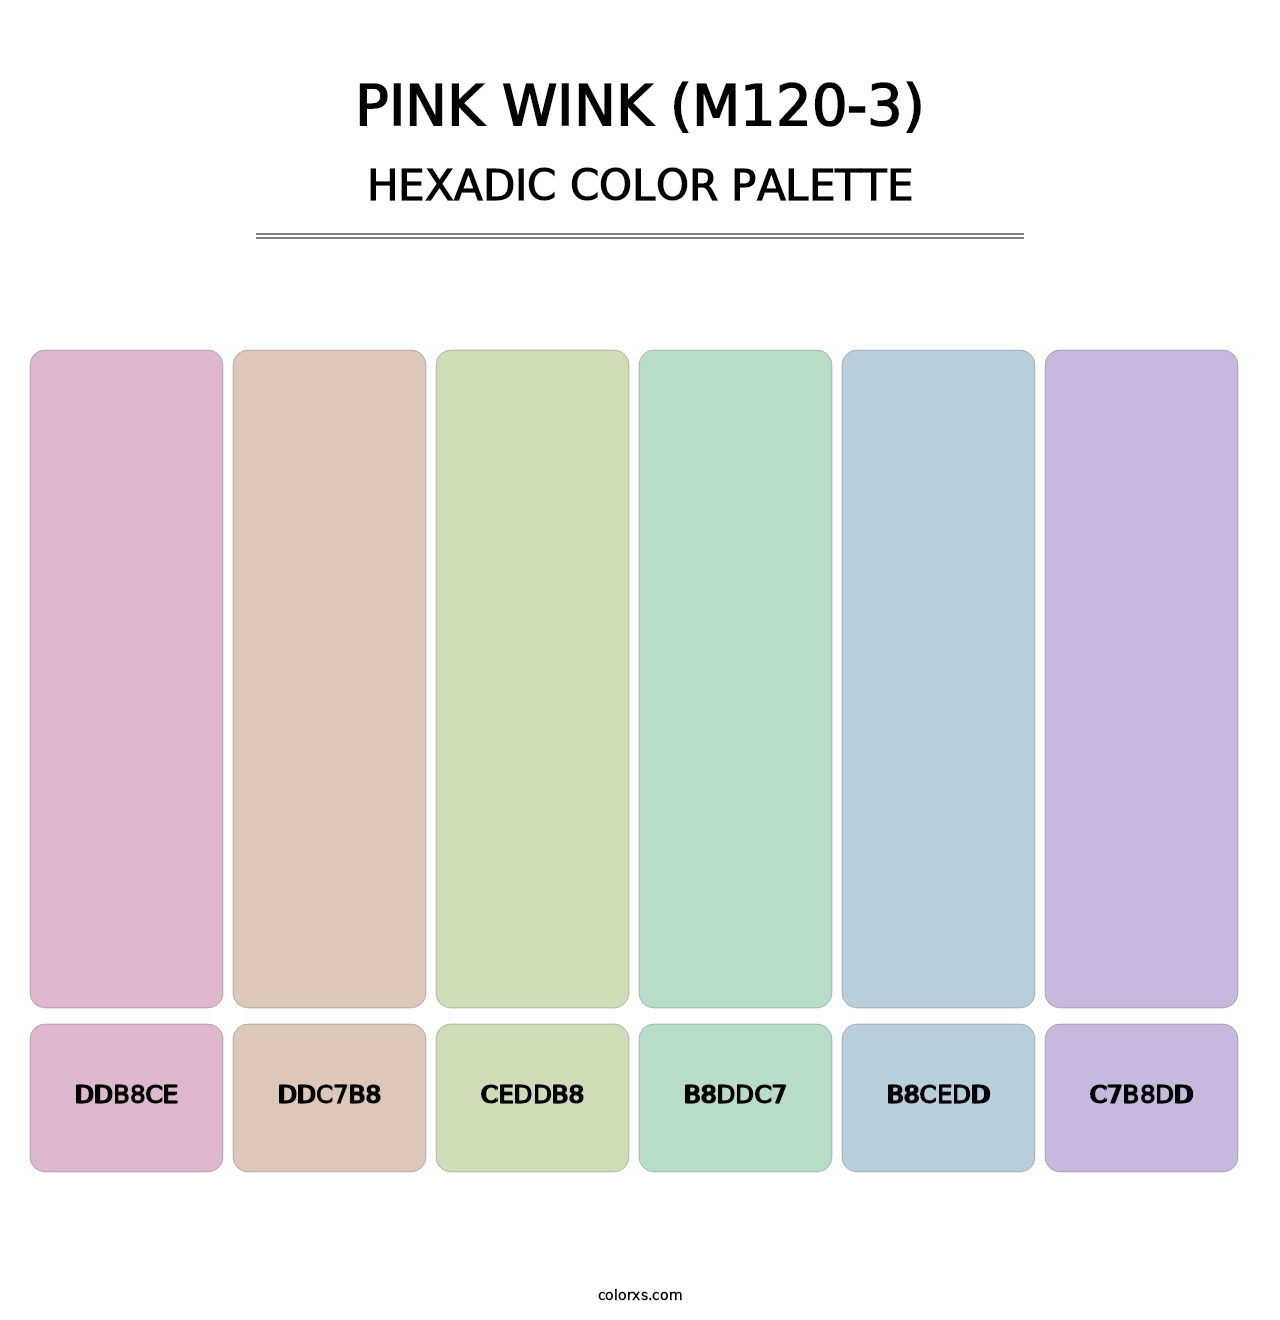 Pink Wink (M120-3) - Hexadic Color Palette